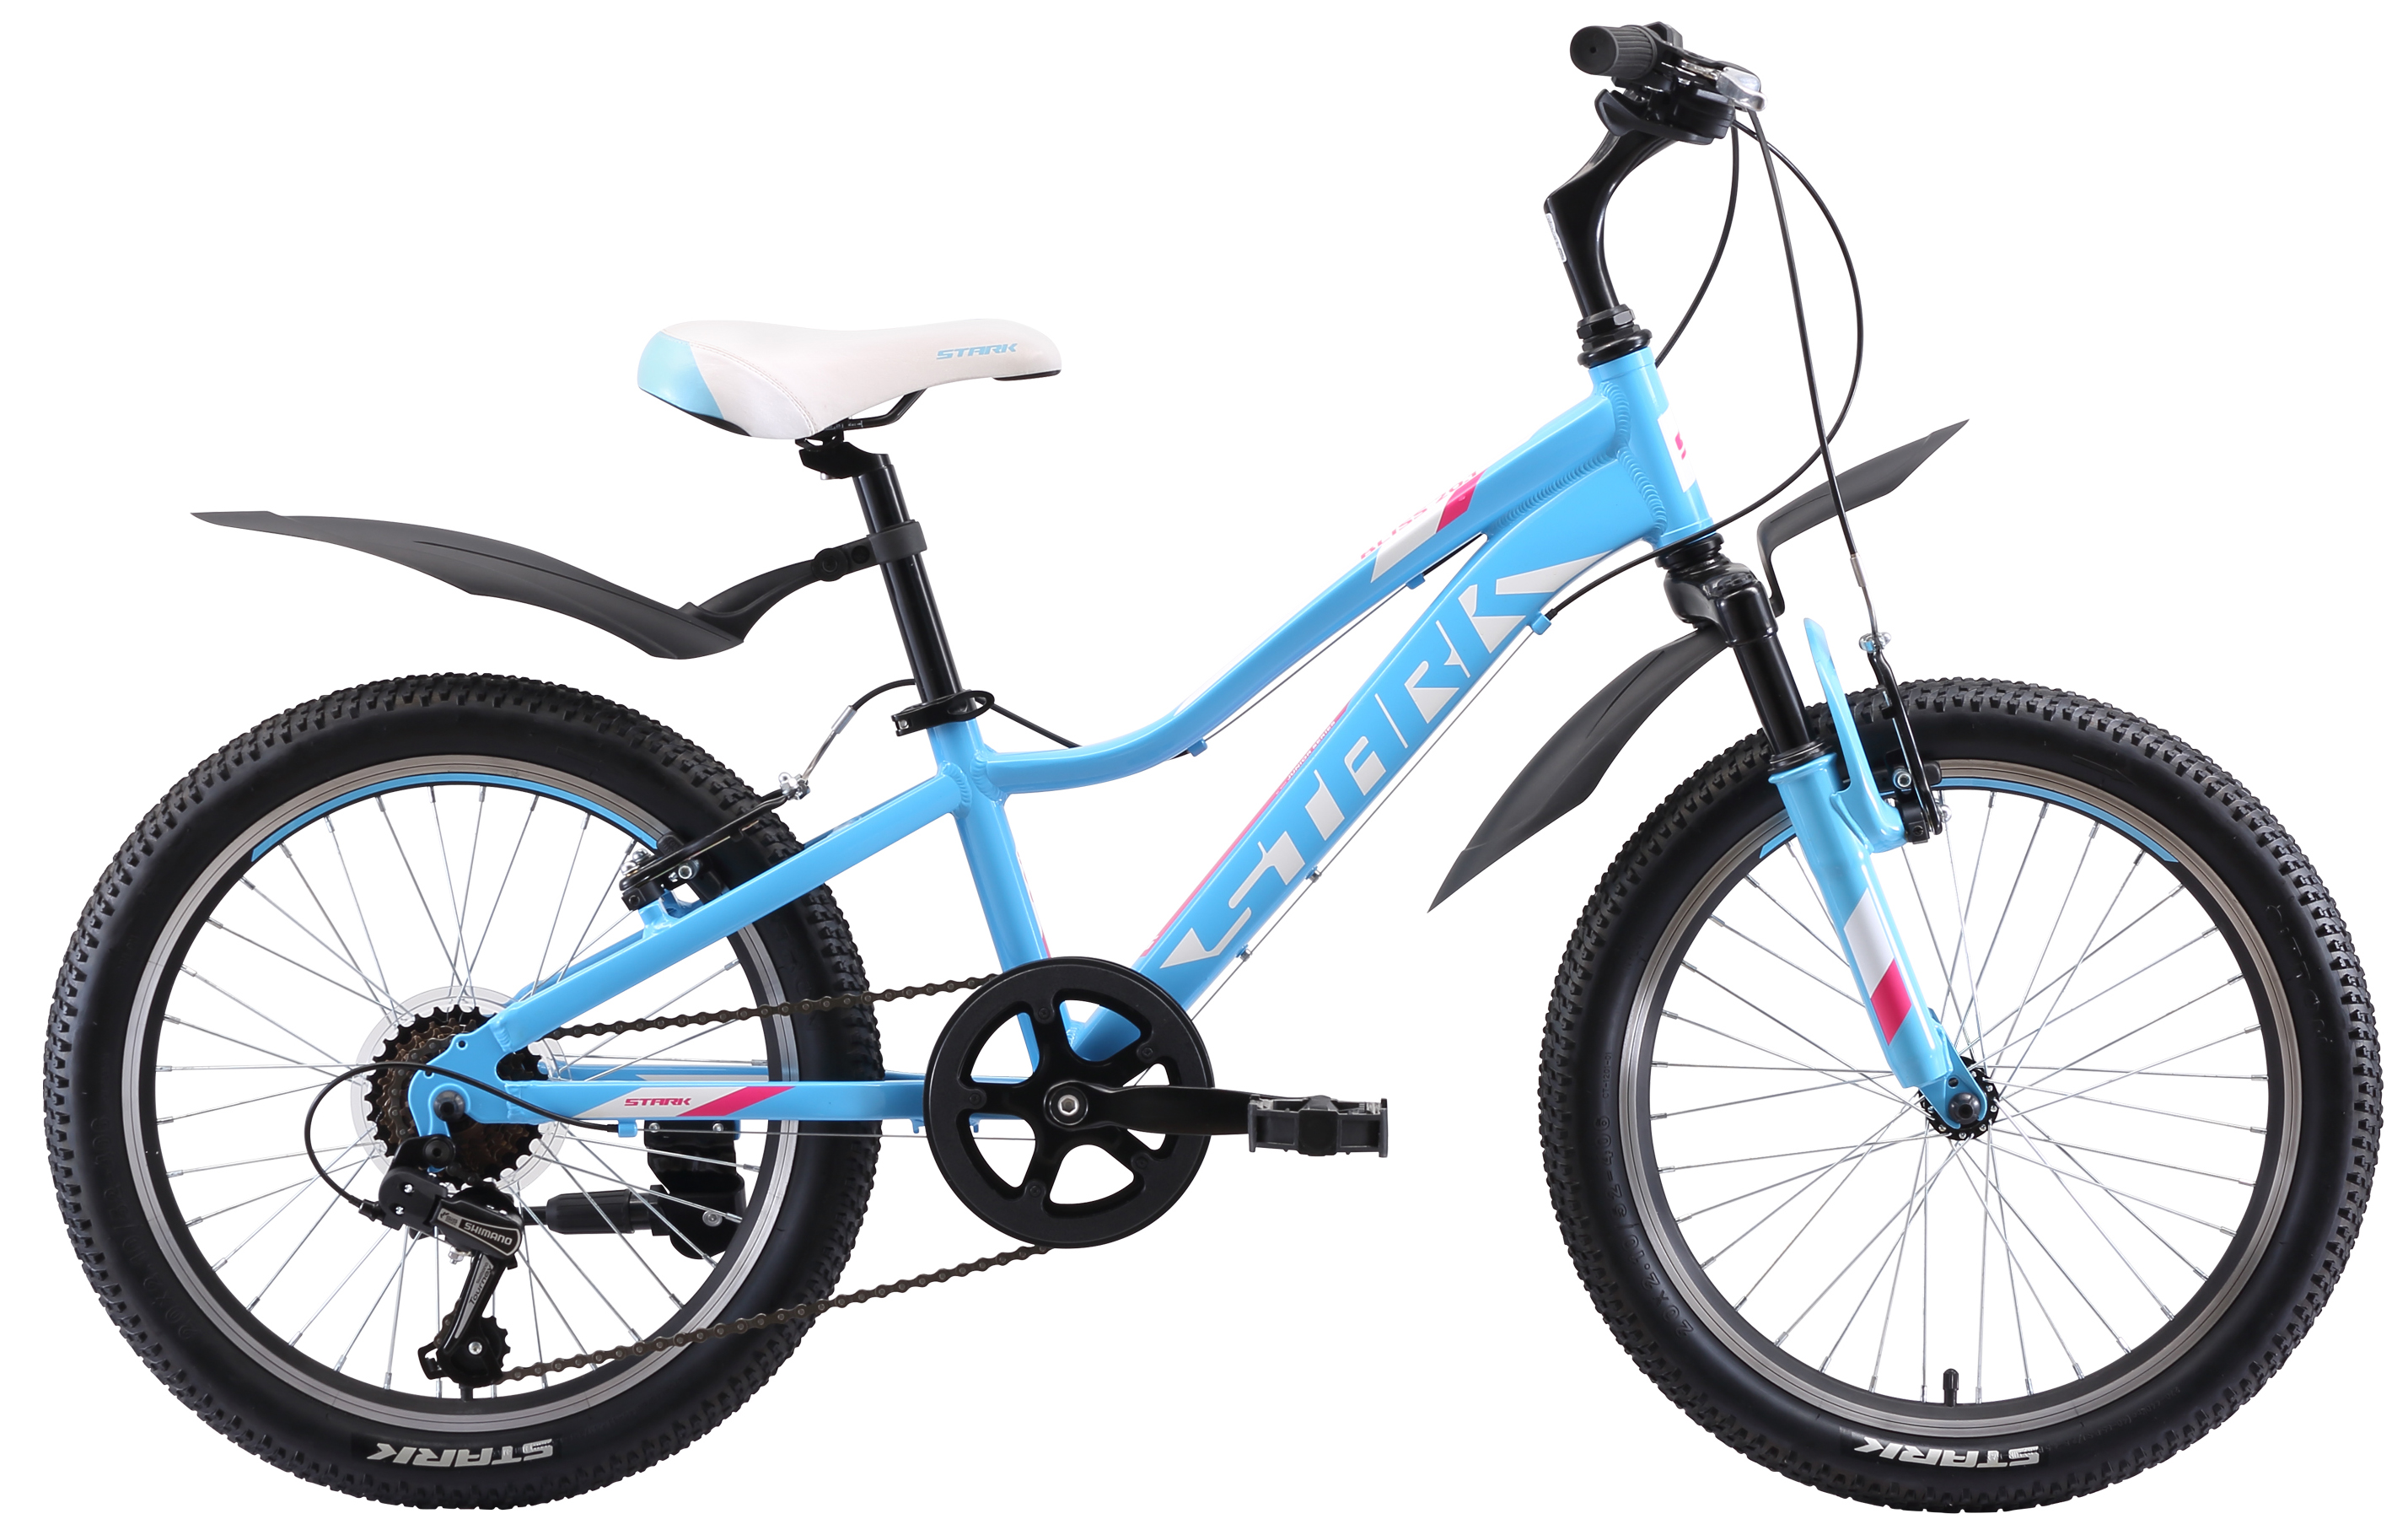  Отзывы о Детском велосипеде Stark Bliss 20.1 V 2020